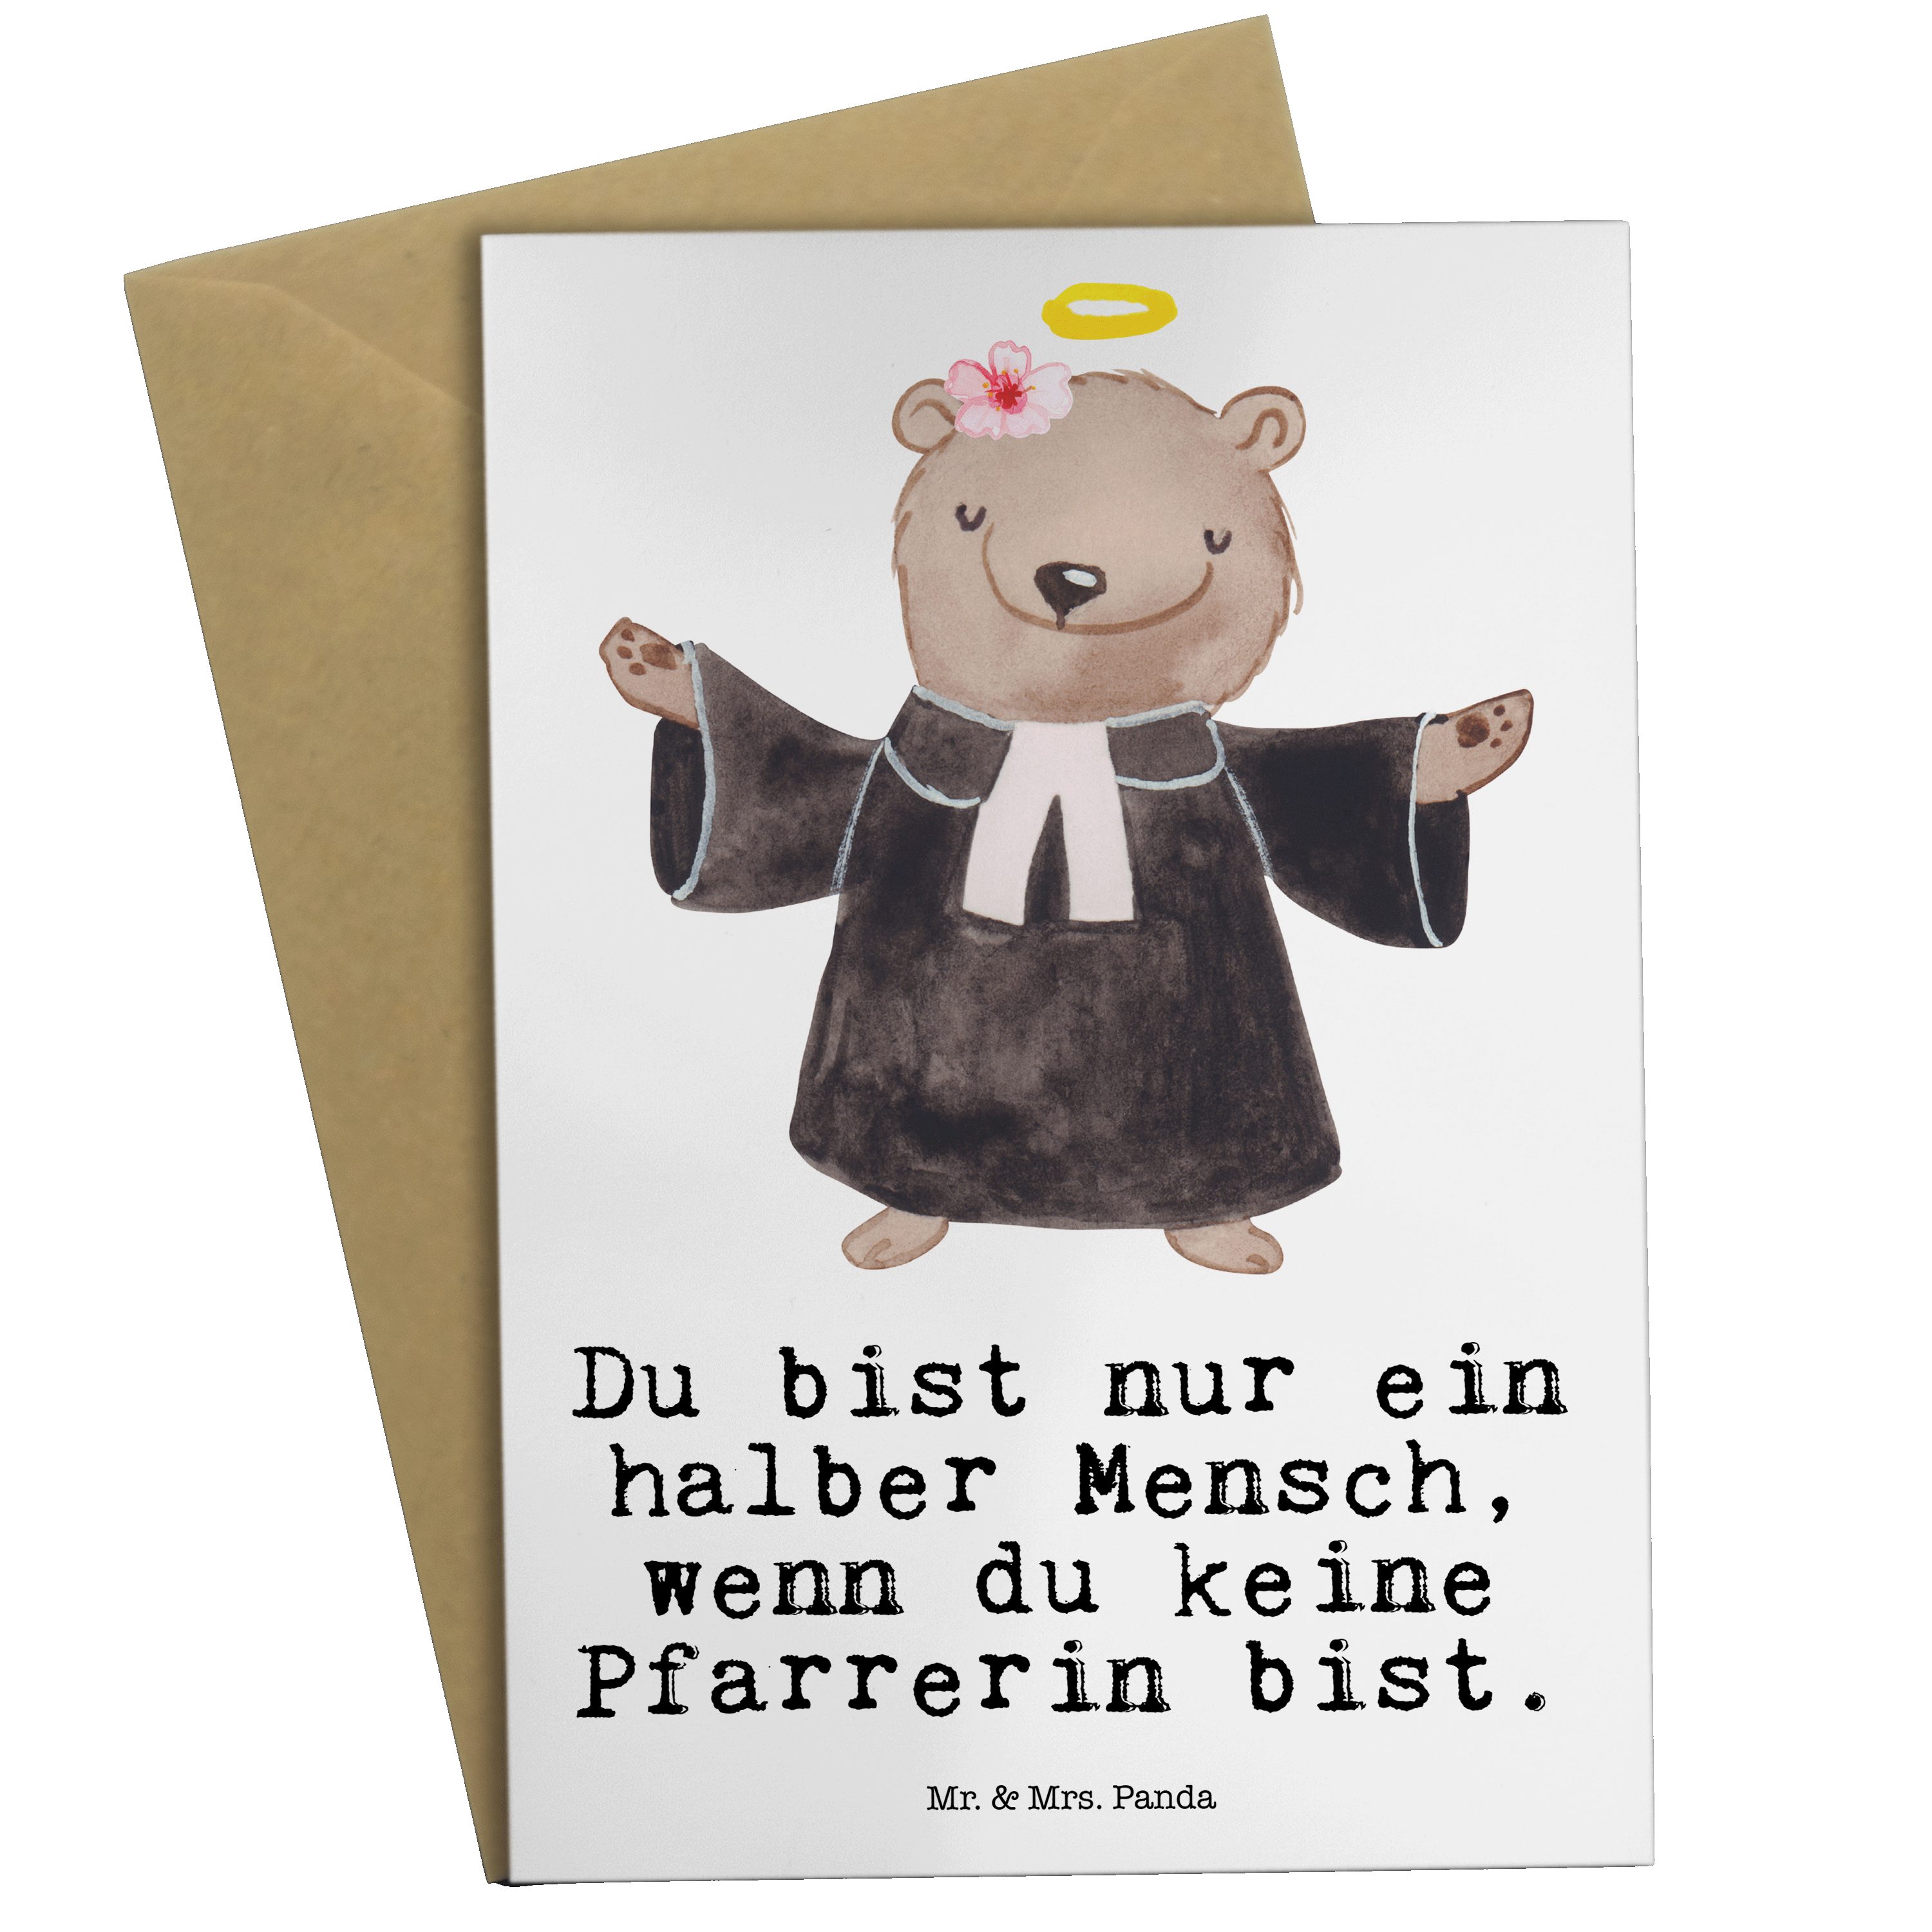 Mr. & Mrs. Panda Grußkarte Pfarrerin mit Herz - Weiß - Geschenk, Geburtstagskarte, Klappkarte, K